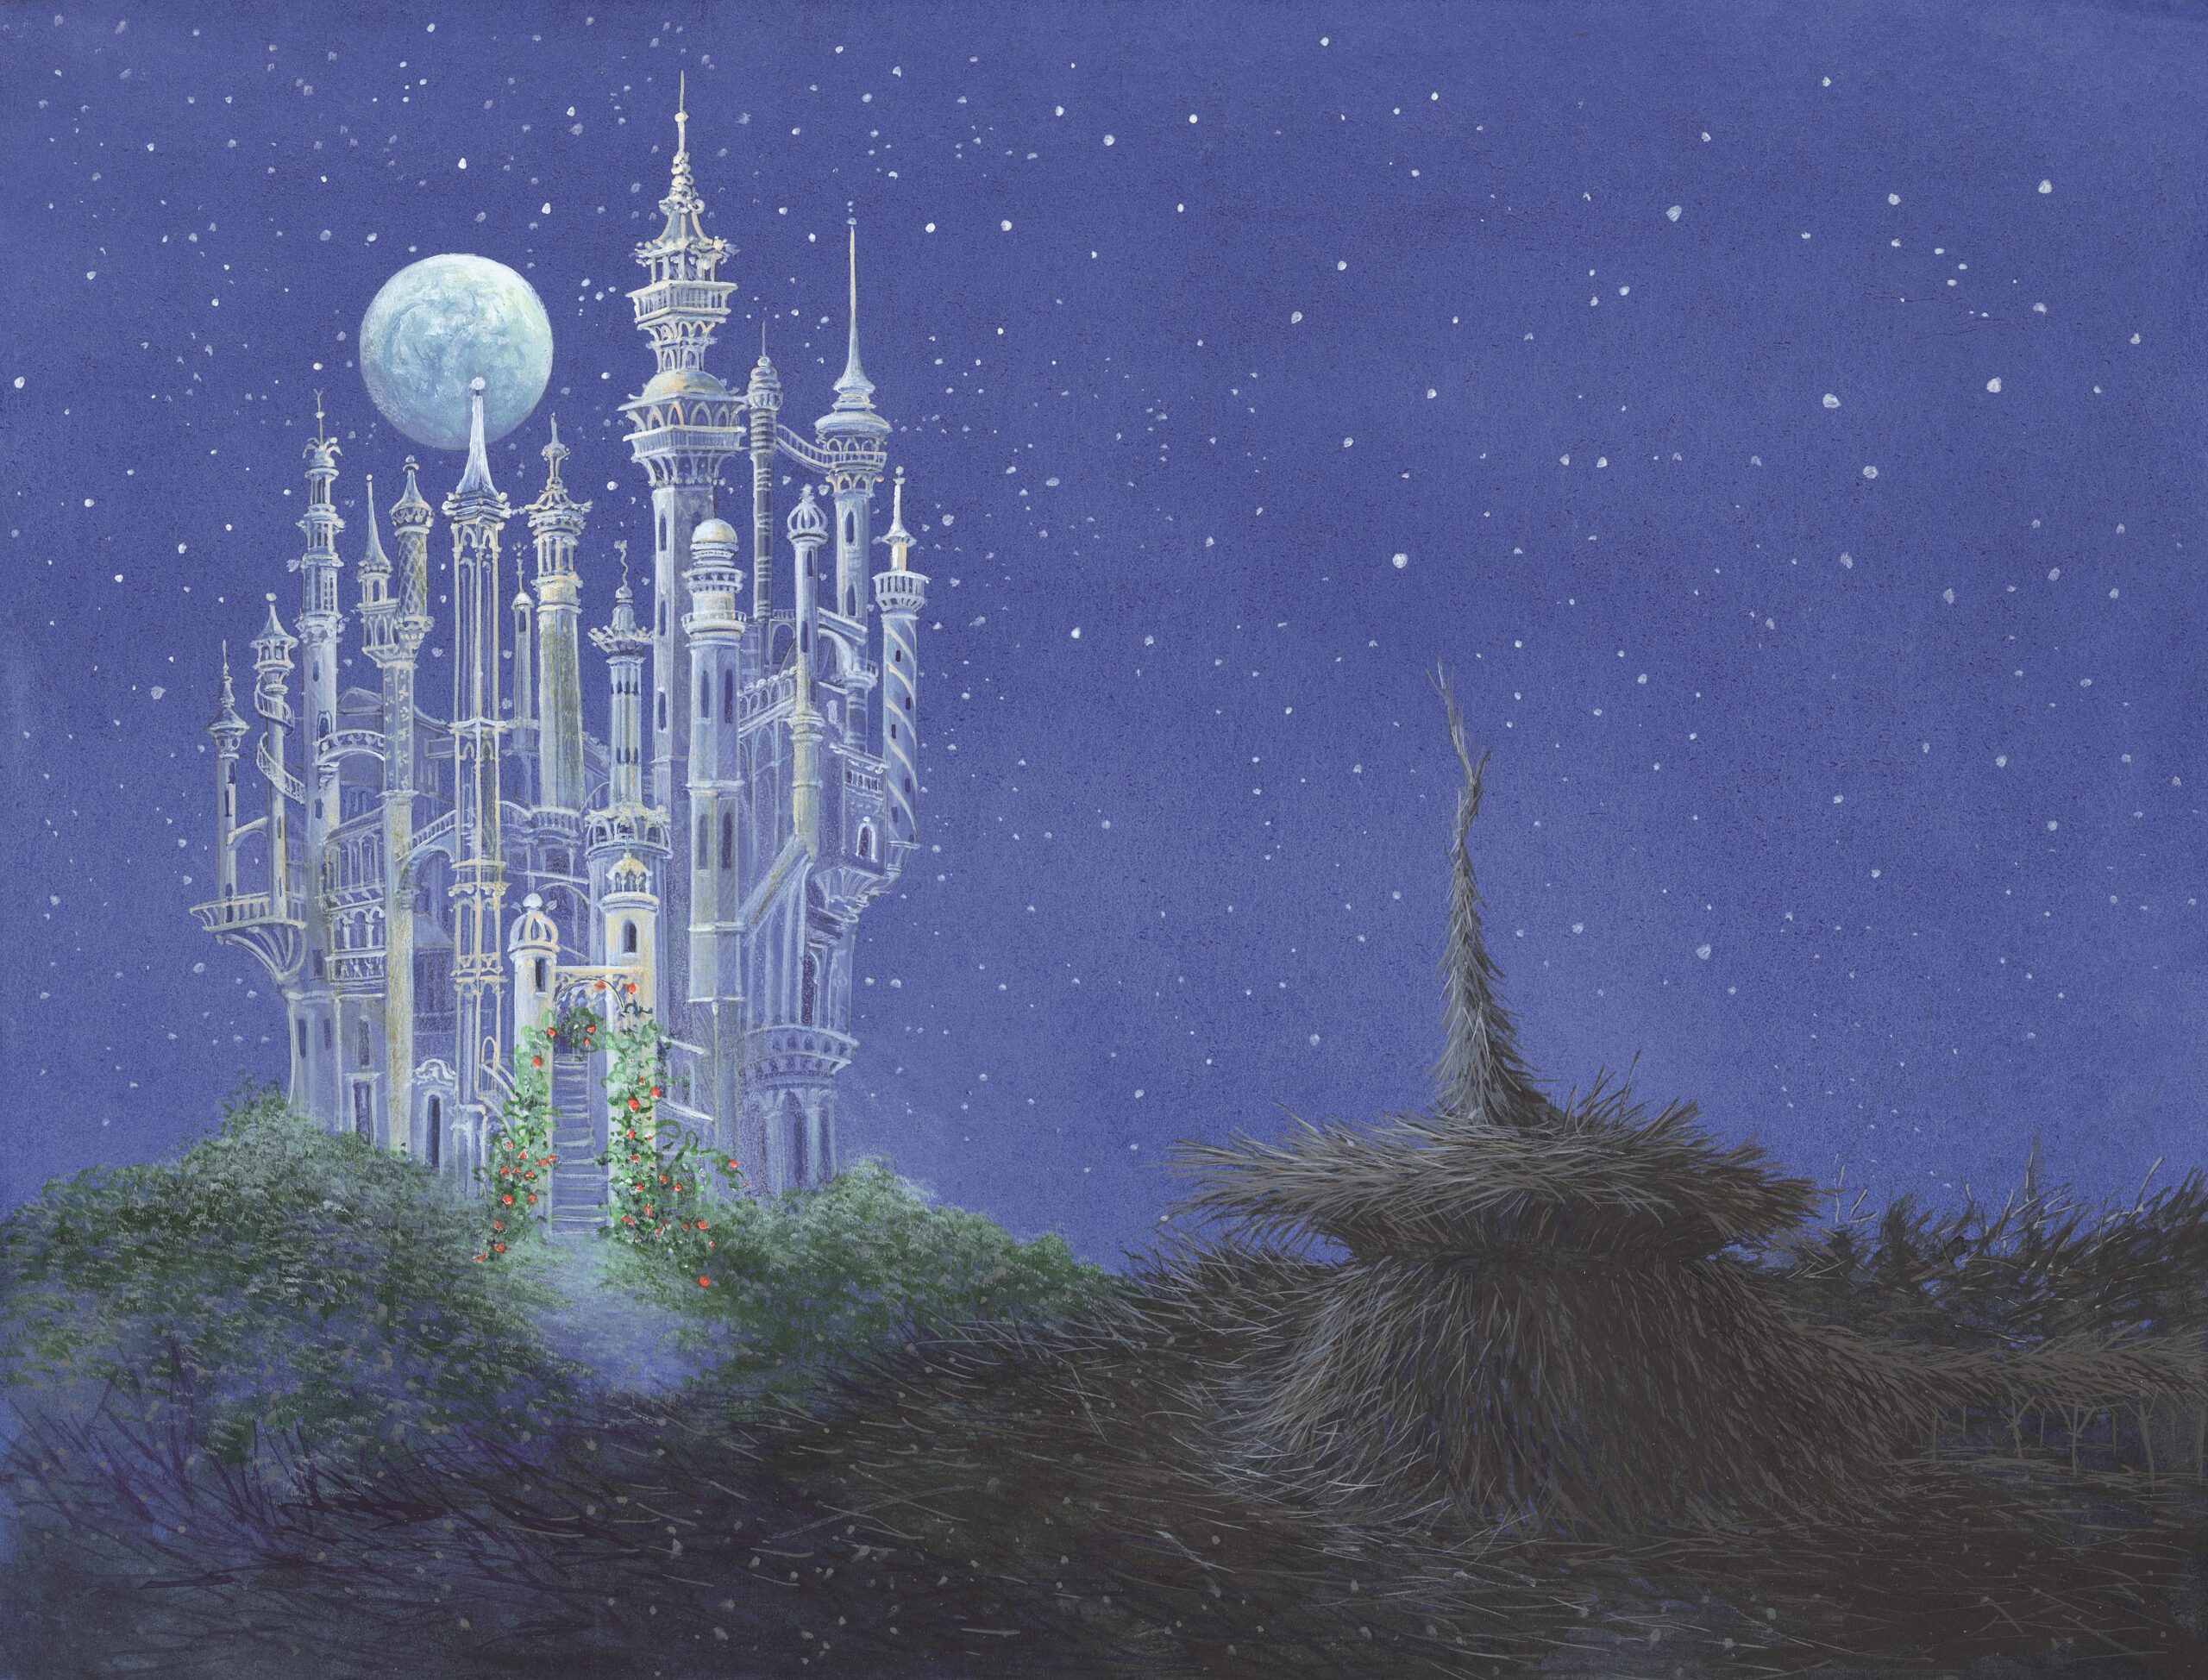 Illustratie van het paleis van de elfenkoning door Charlotte Dematons uit Paul Biegels 'Nachtverhaal'